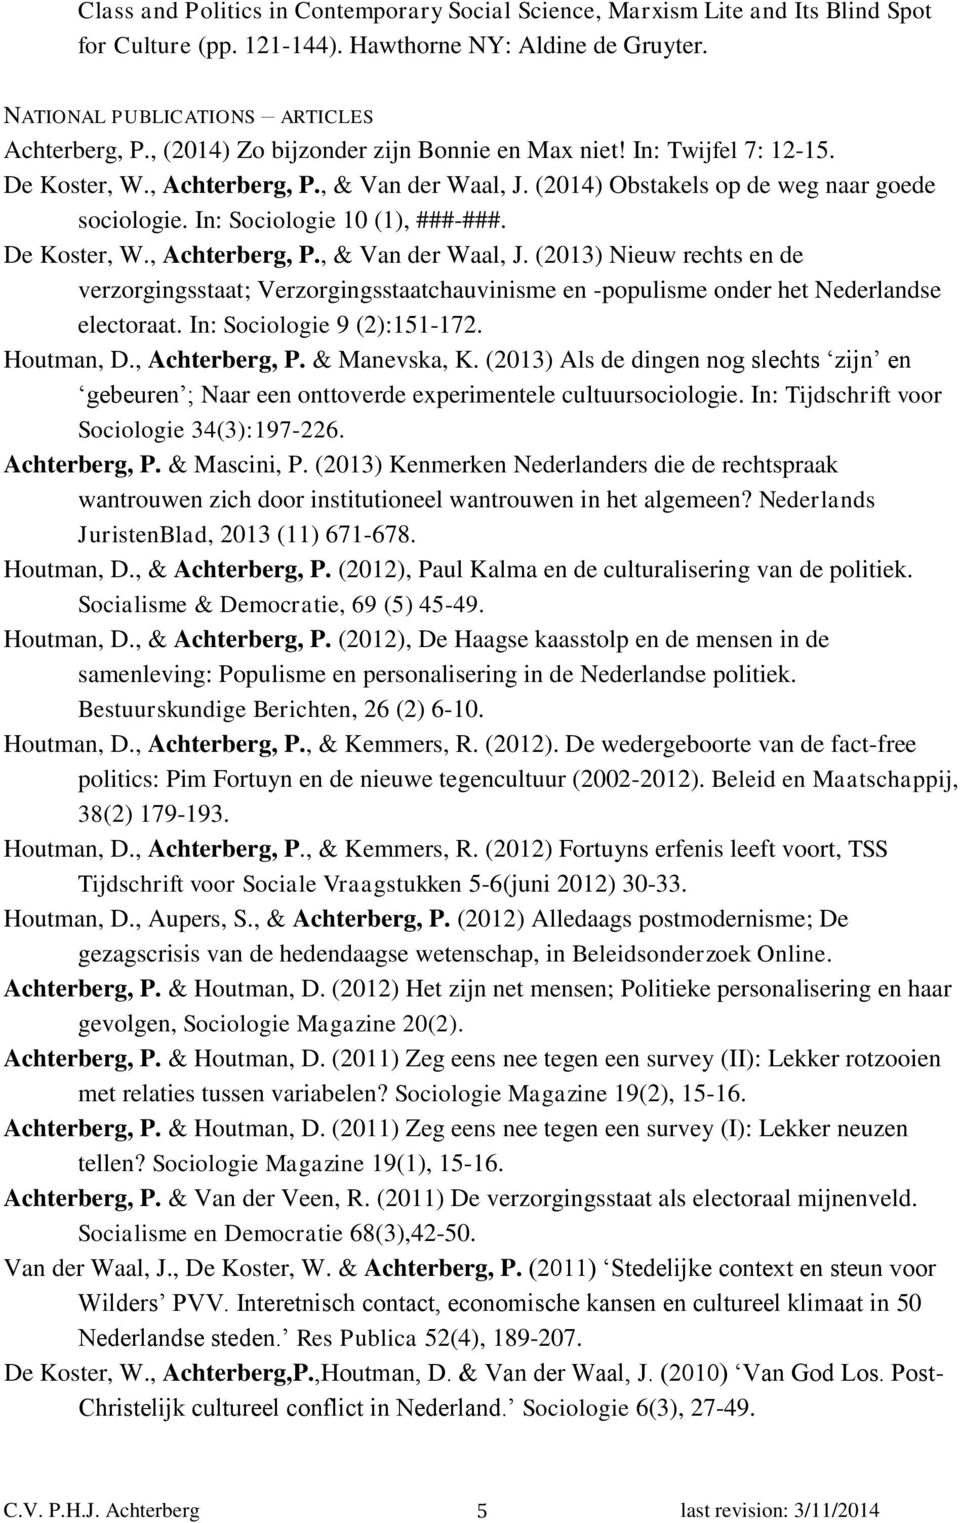 De Koster, W., Achterberg, P., & Van der Waal, J. (2013) Nieuw rechts en de verzorgingsstaat; Verzorgingsstaatchauvinisme en -populisme onder het Nederlandse electoraat. In: Sociologie 9 (2):151-172.